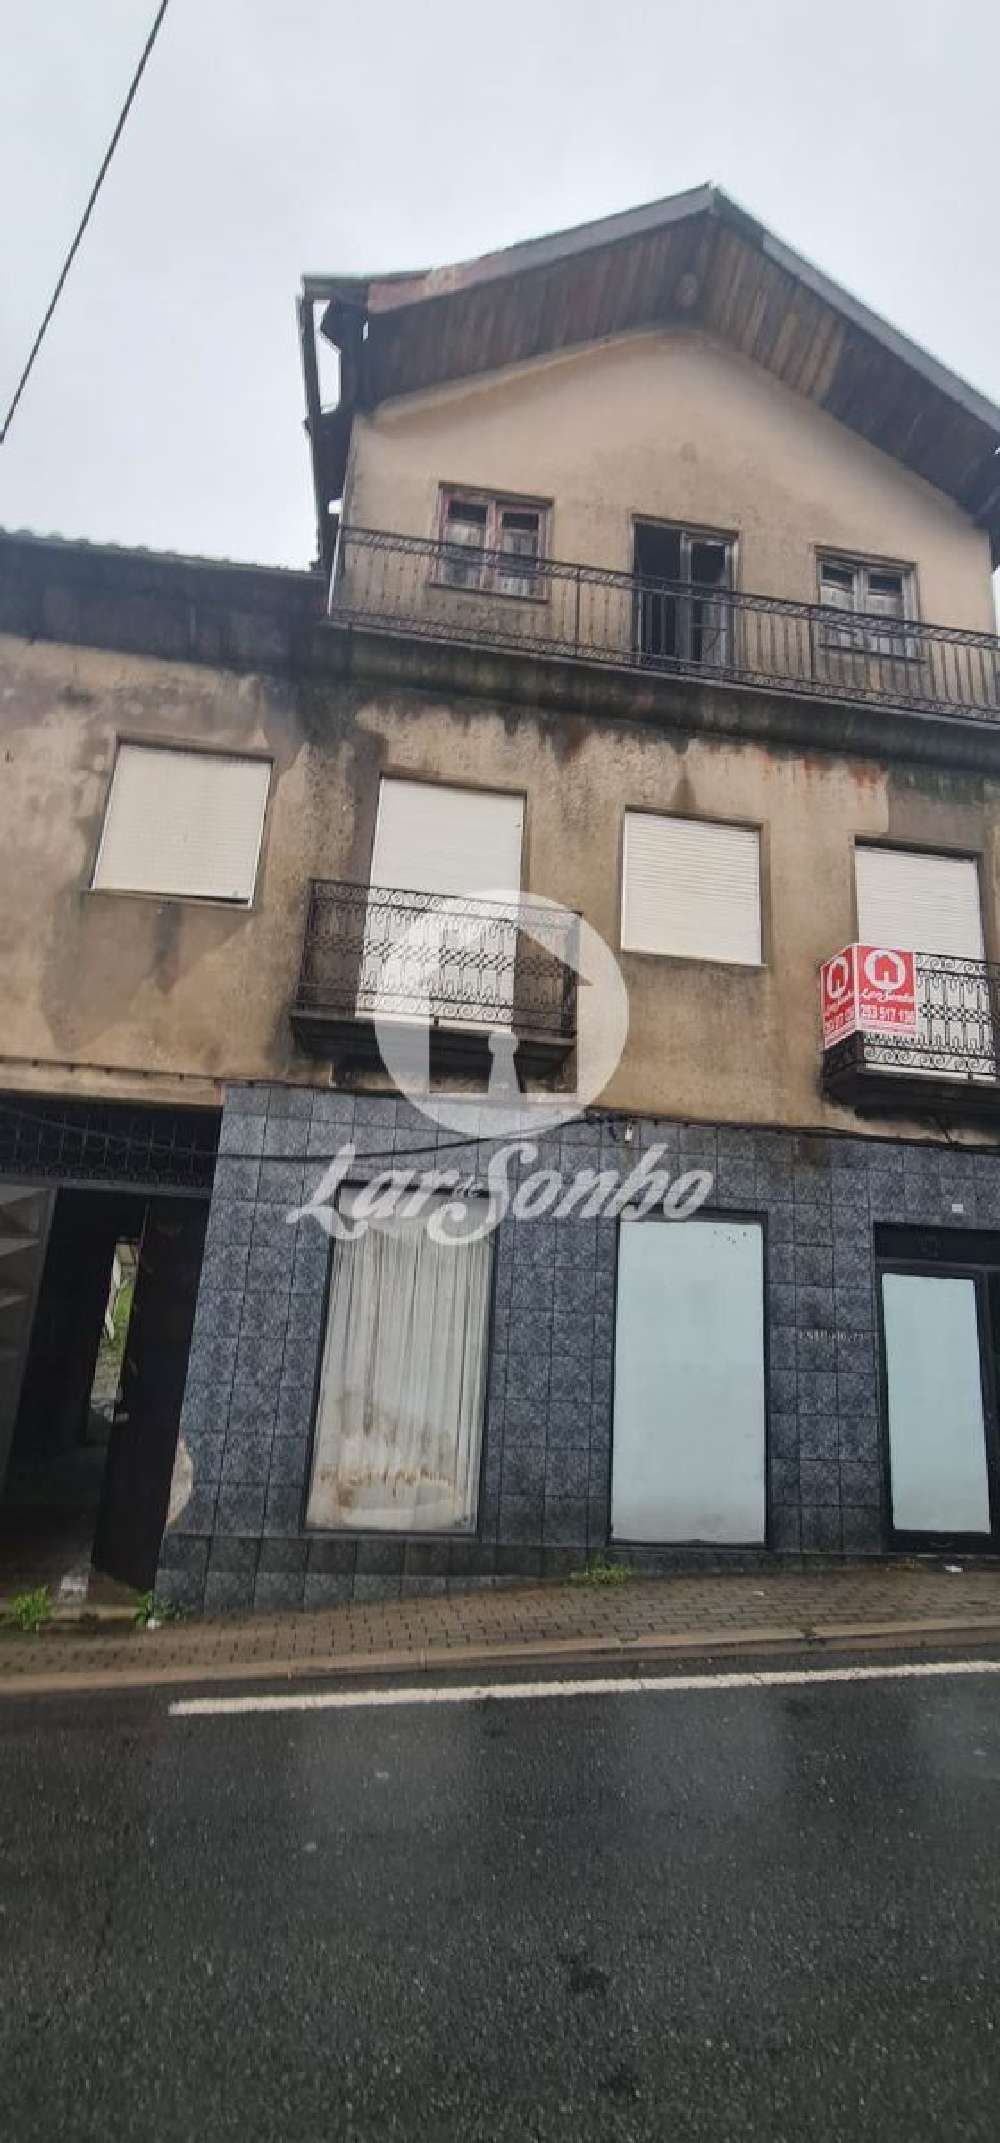  à venda casa  São Torcato  Guimarães 2